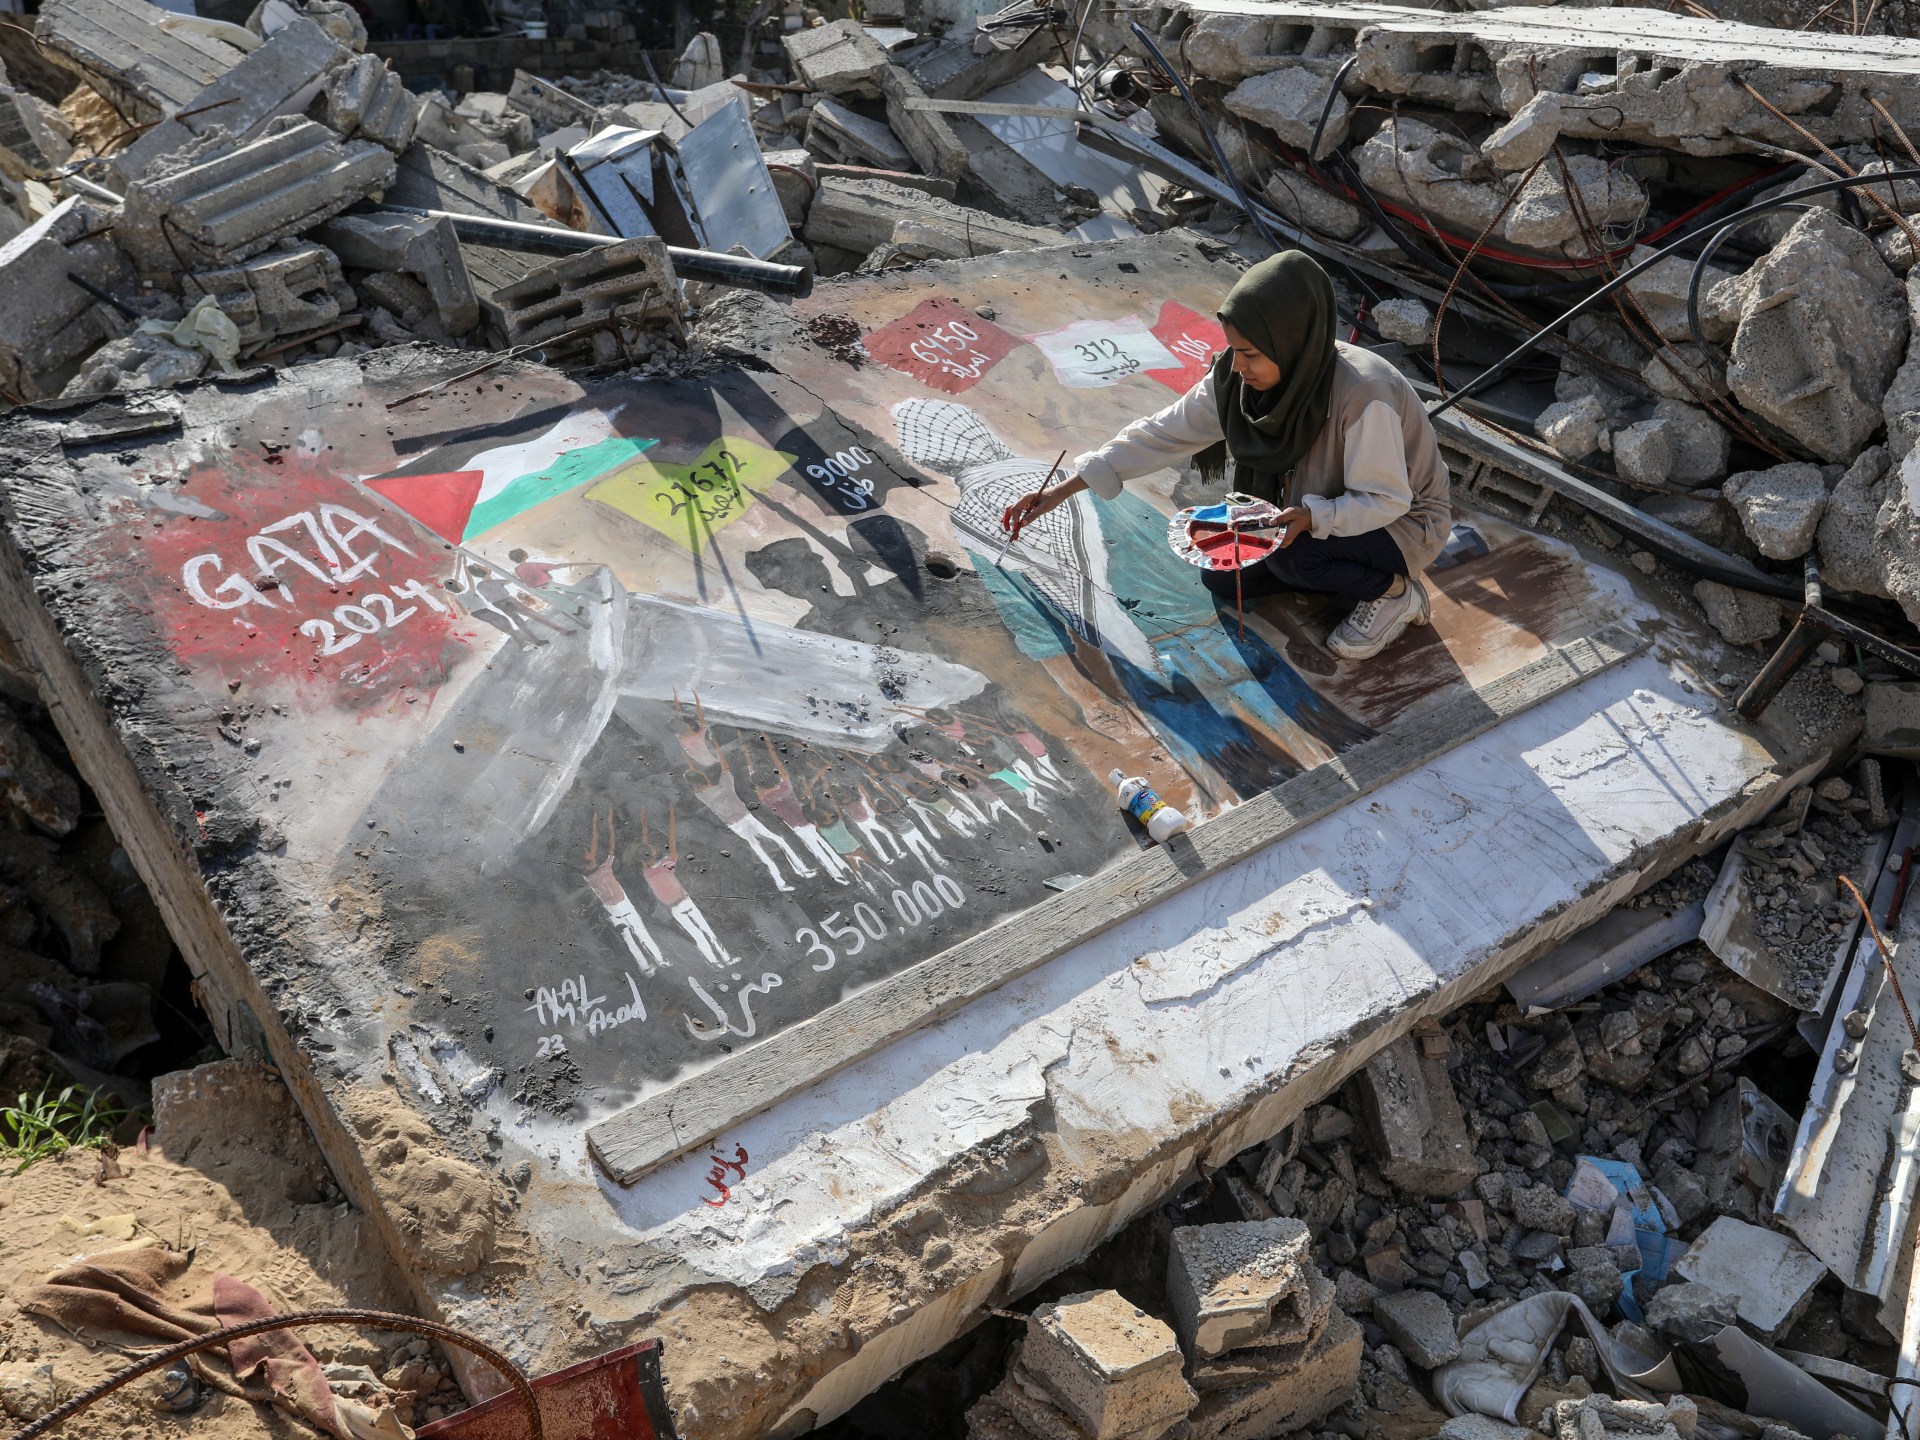 أبرز تطورات اليوم الـ87 من العدوان الإسرائيلي على غزة | أخبار – البوكس نيوز